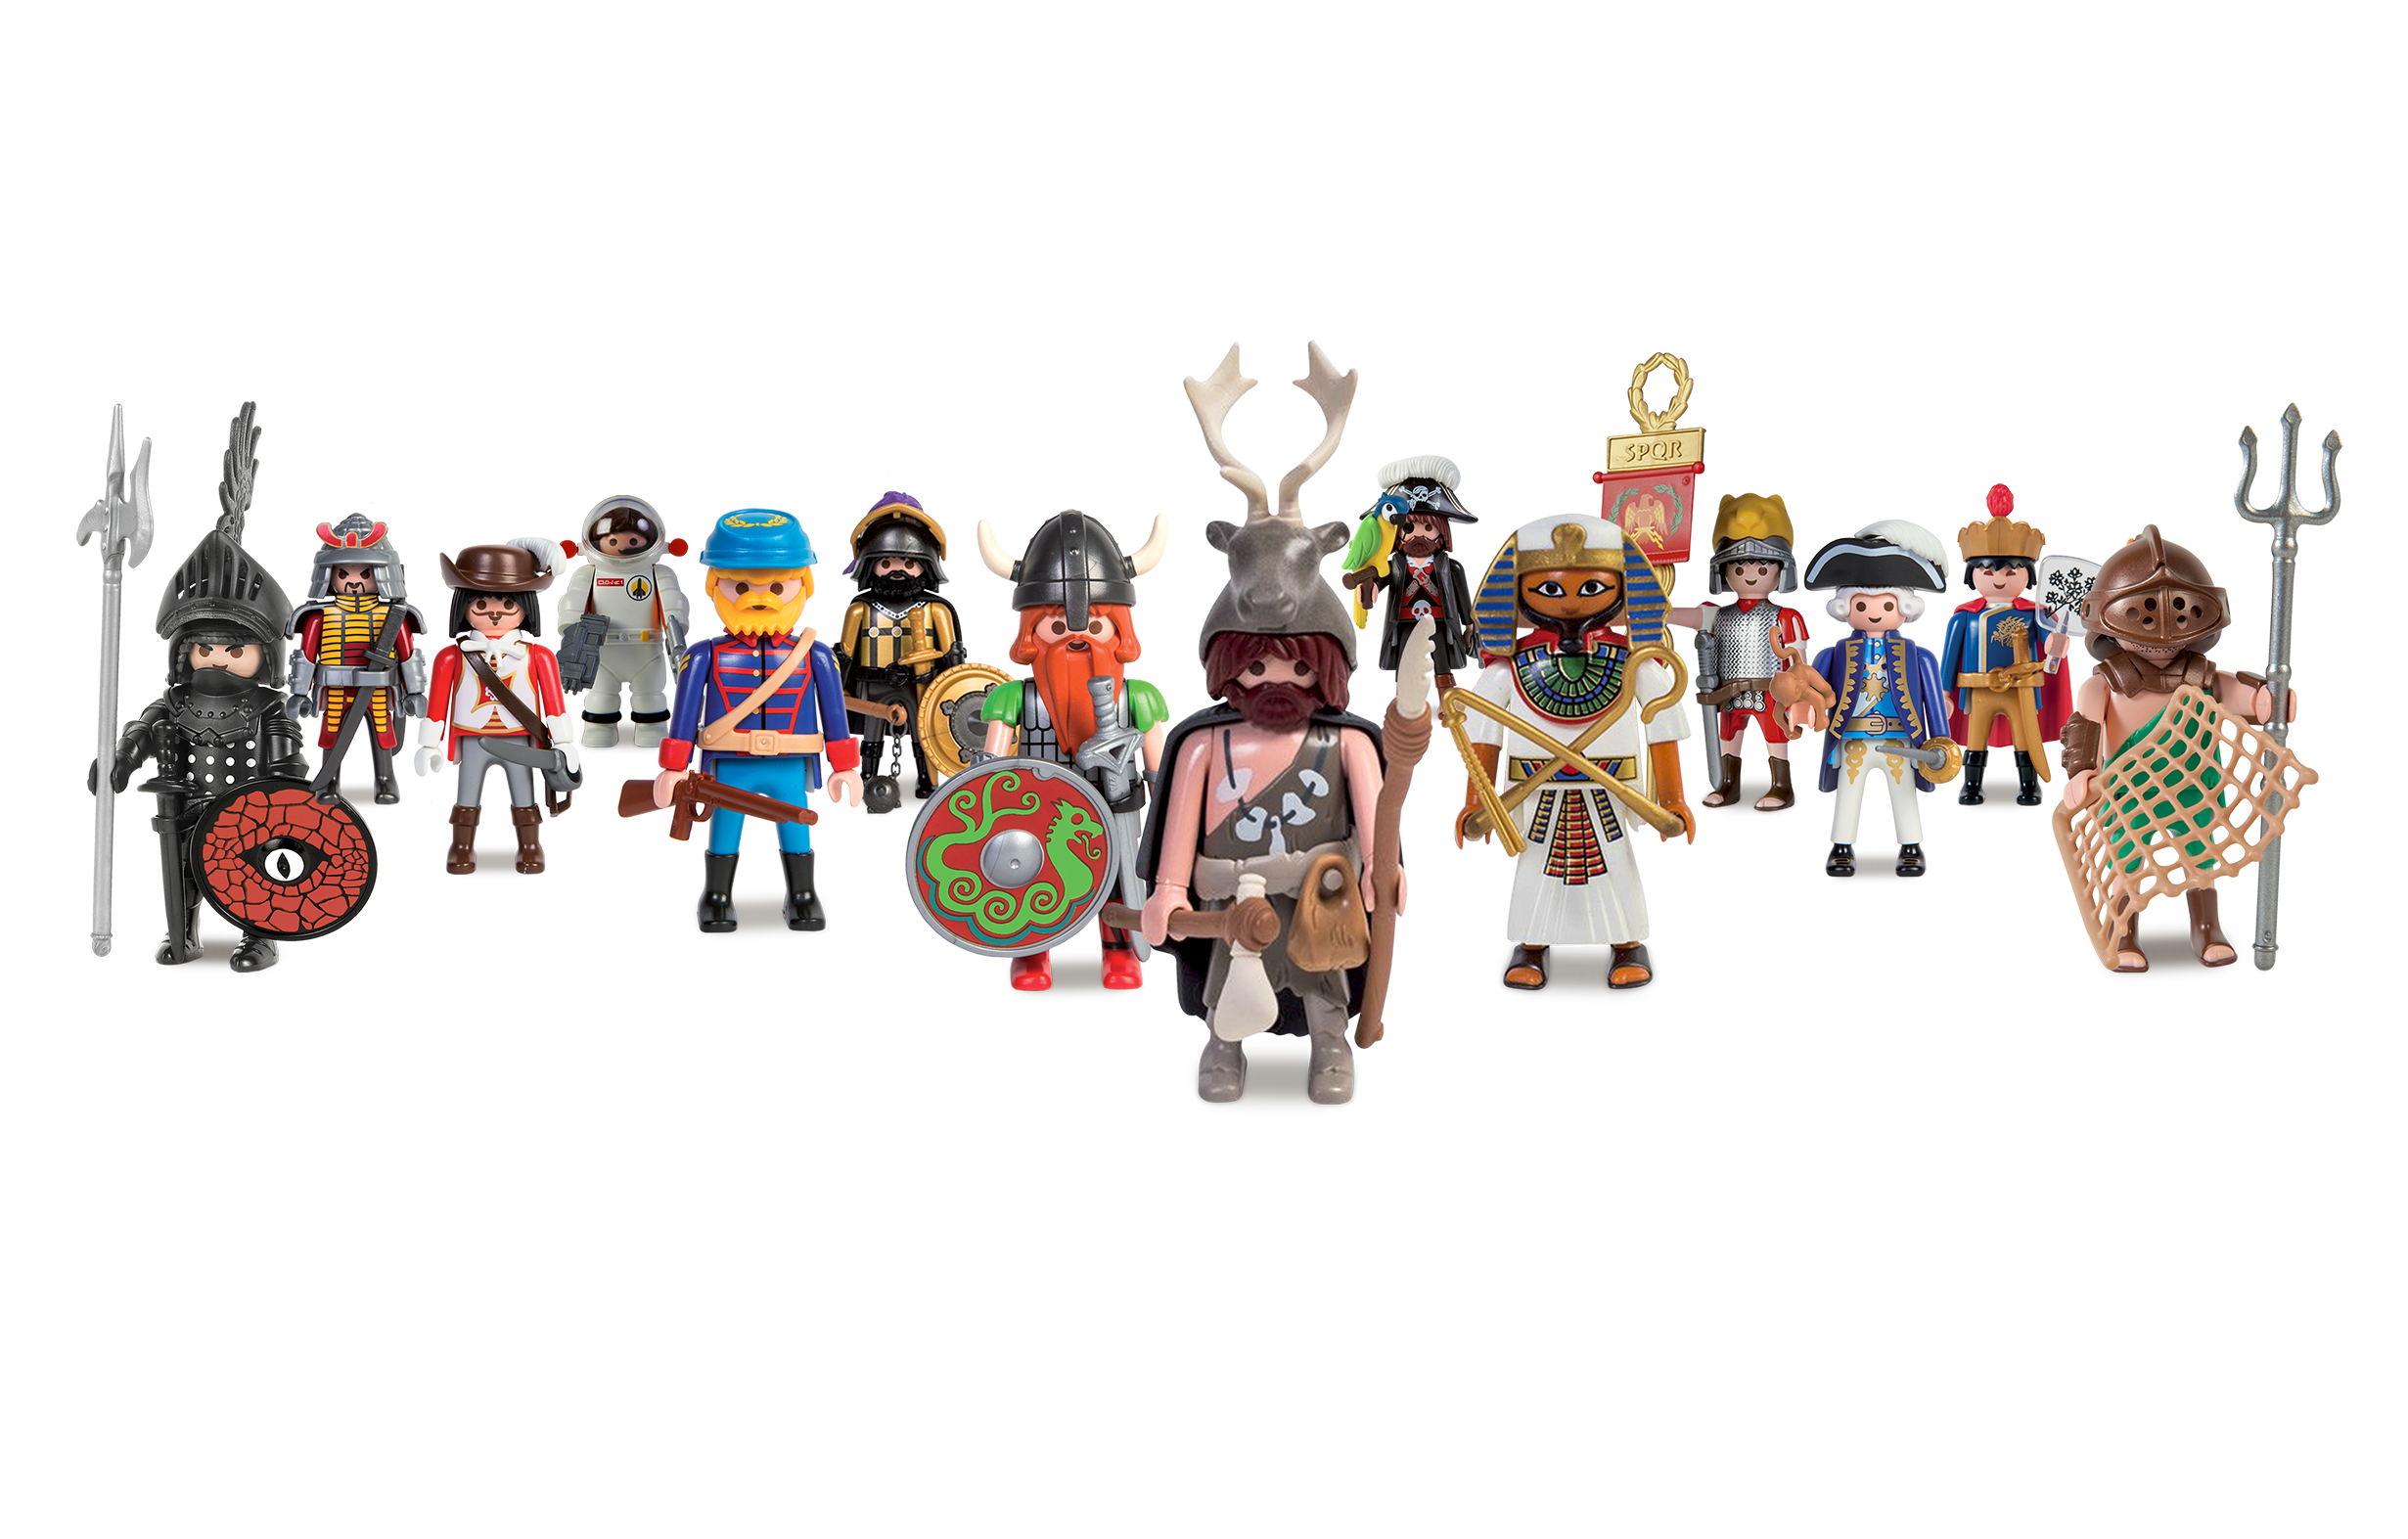 cada una de las 14 figuras representa a un personaje histórico y tiene el ameno sello Playmobil.